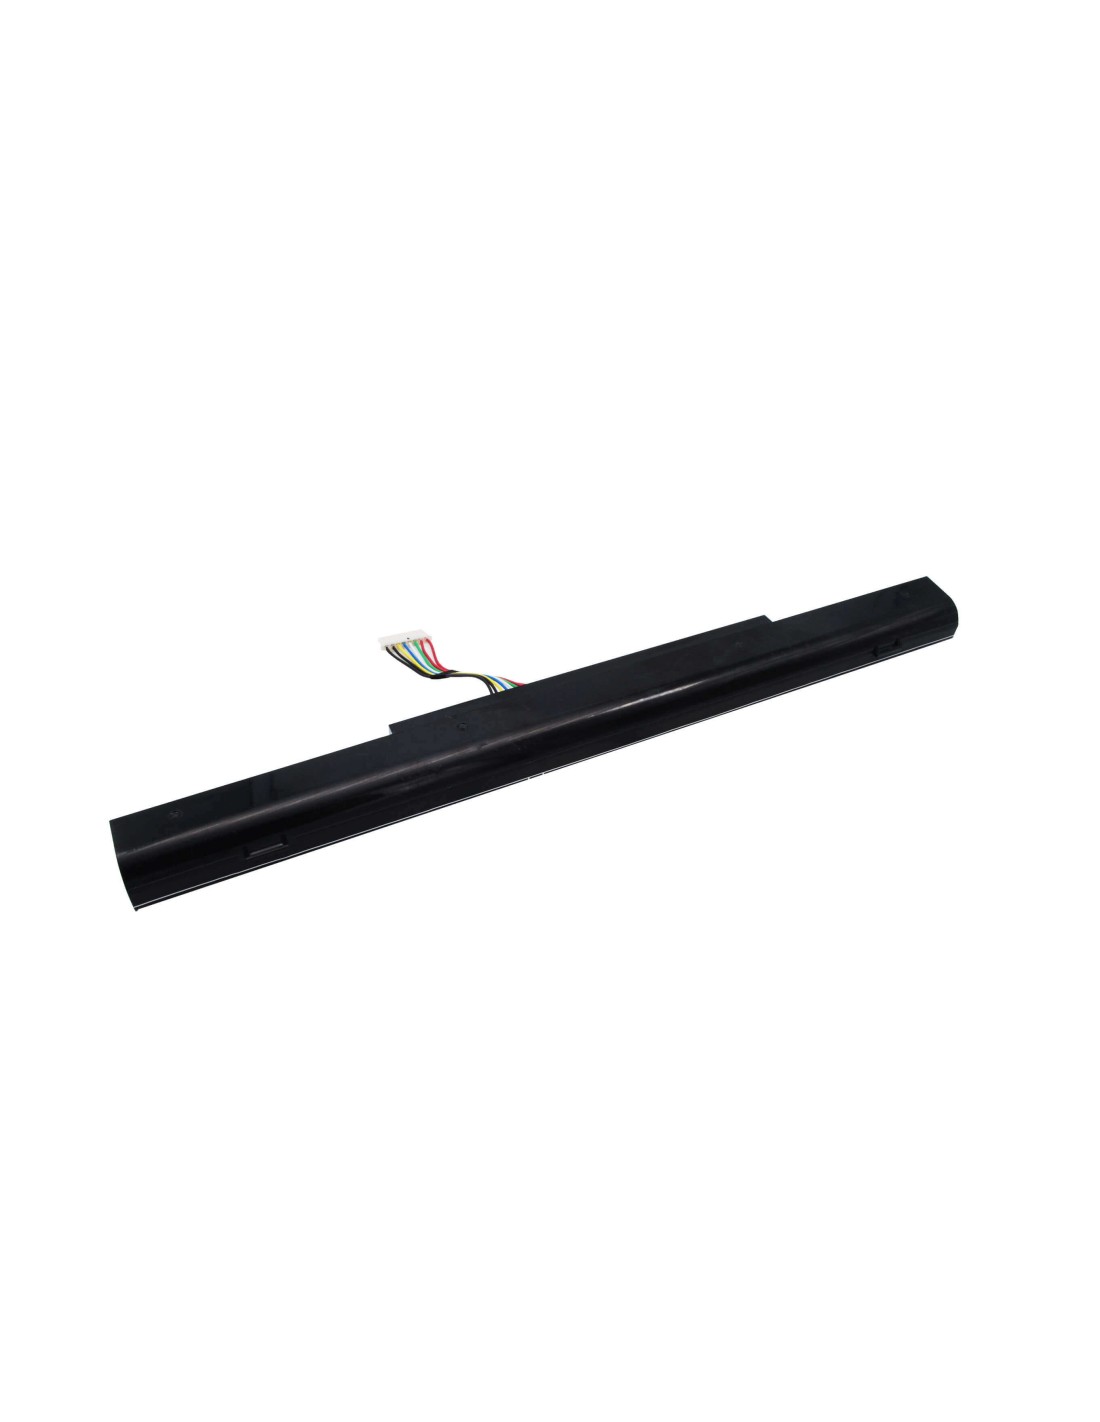 Black Battery for Acer Aspire E5-422, Aspire E5-422g, Aspire E5-472 14.8V, 2200mAh - 32.56Wh